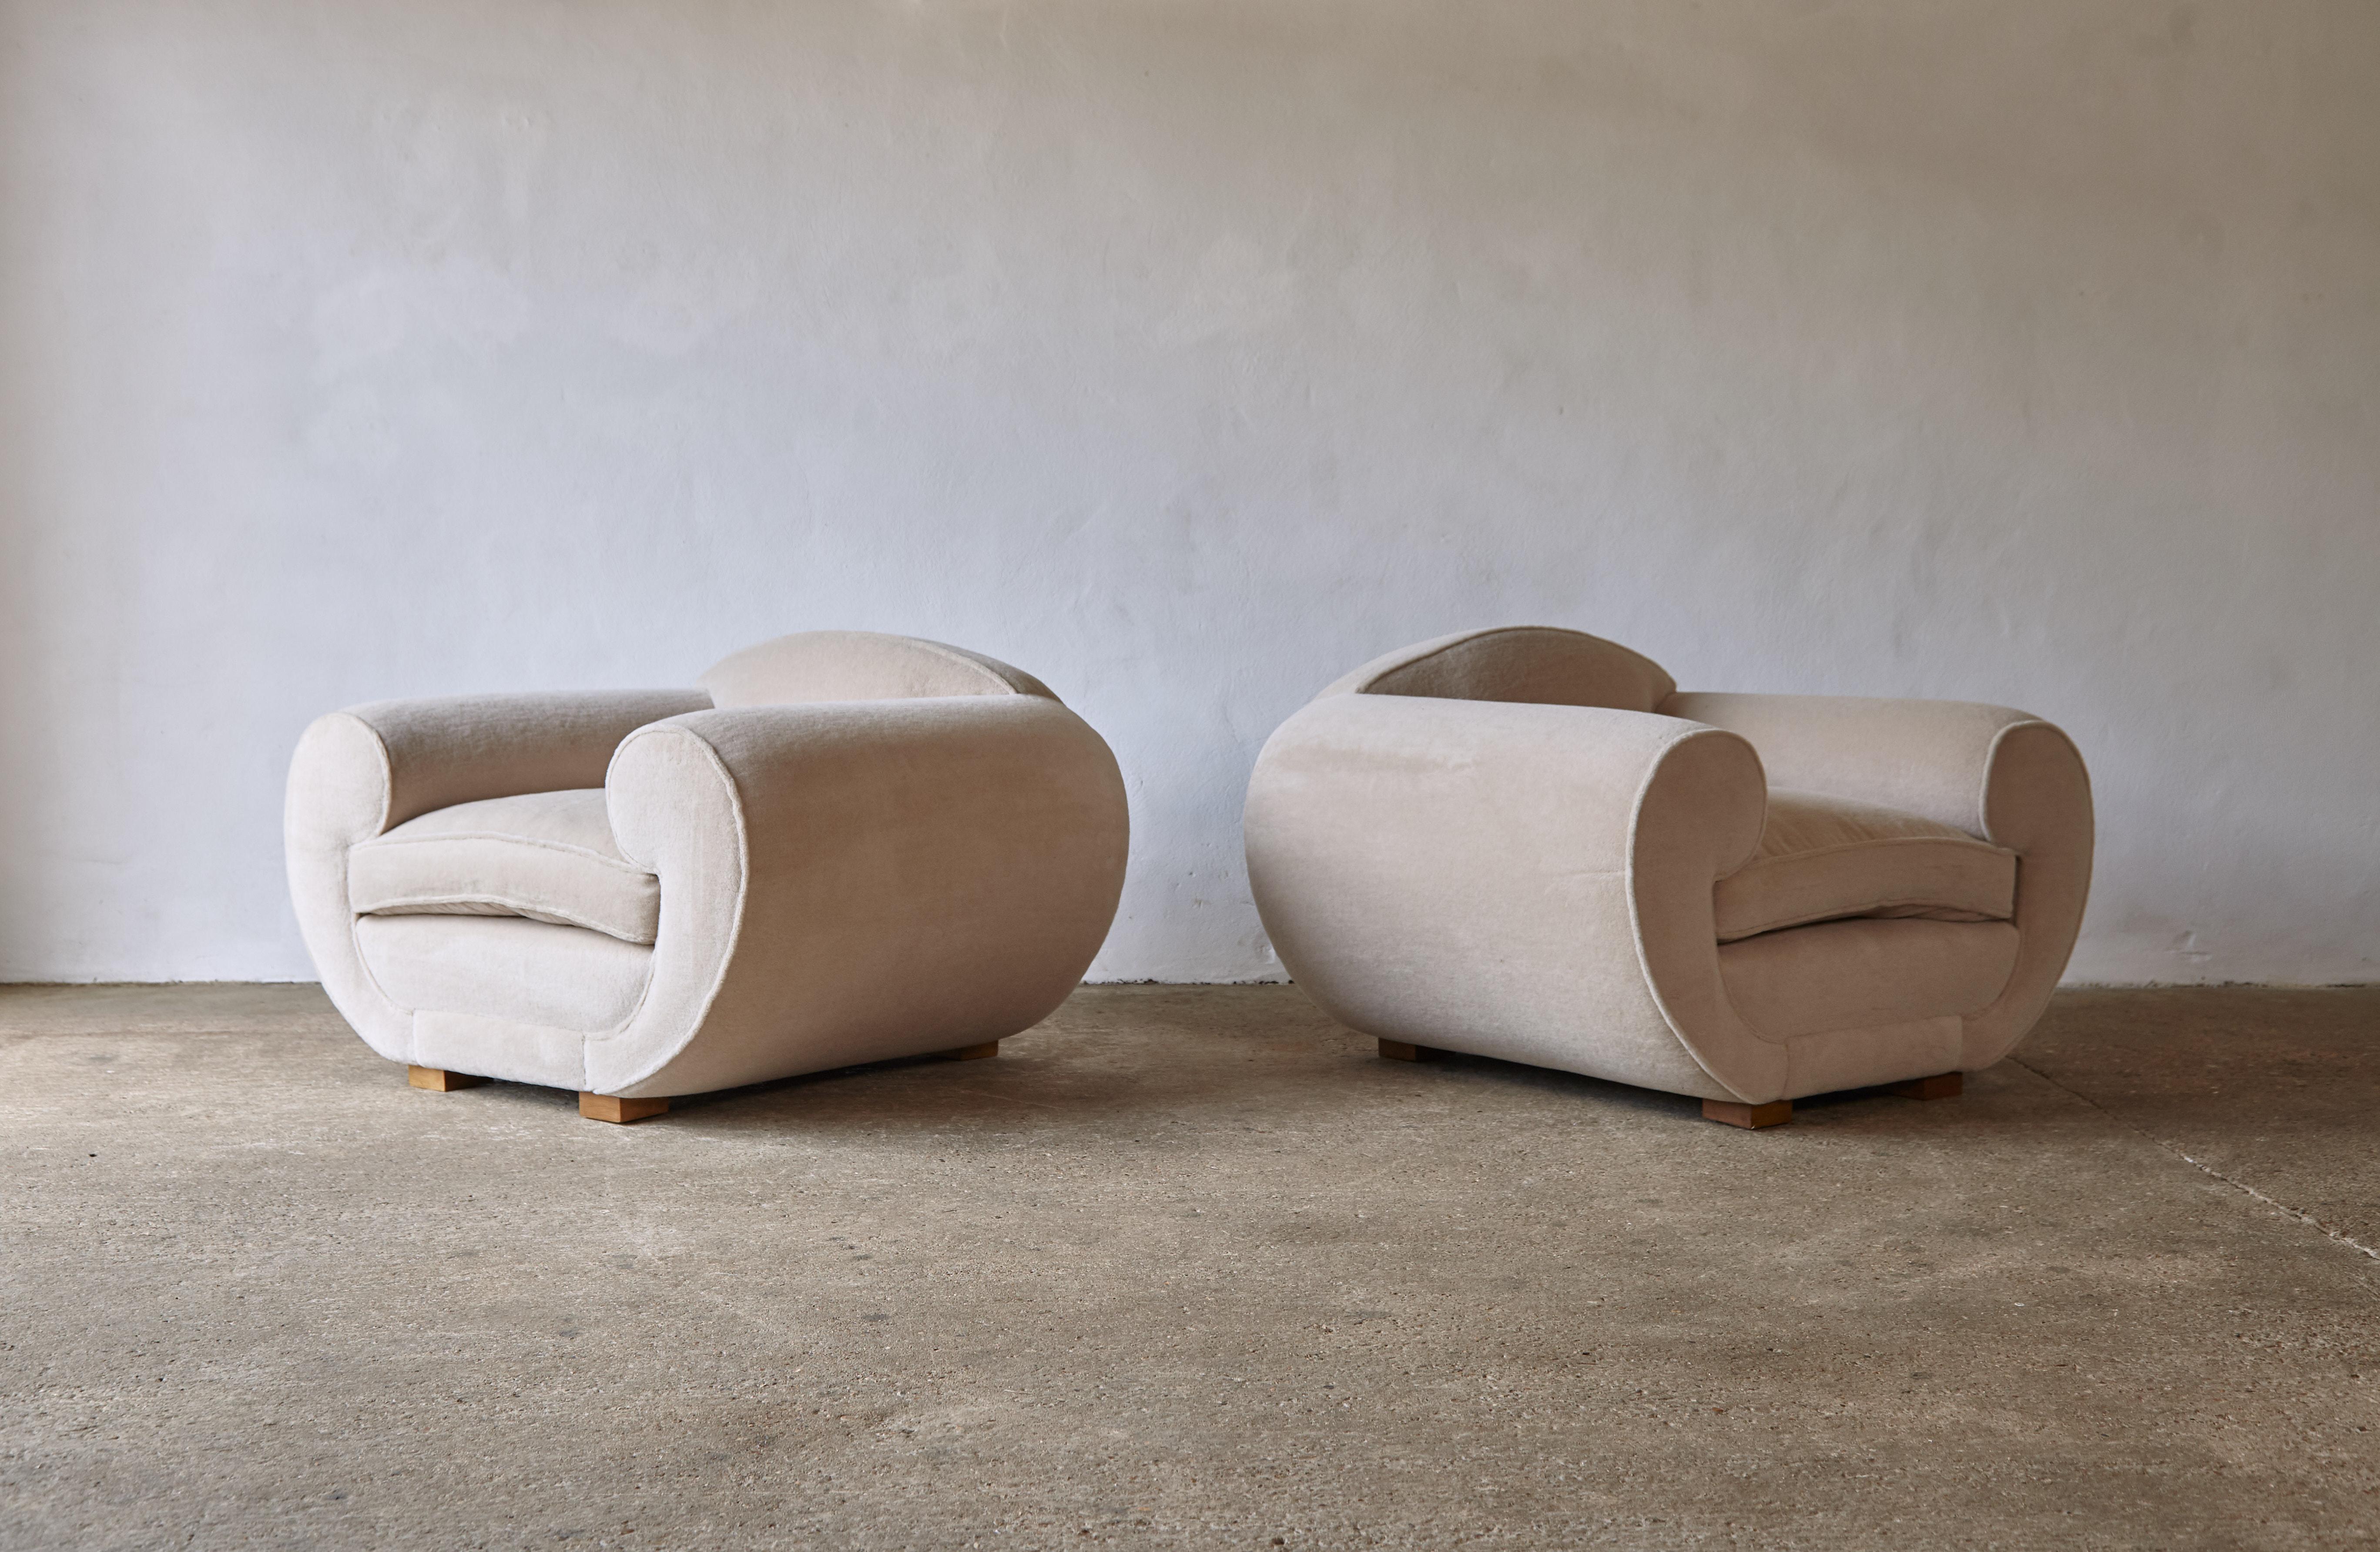 Superbe paire de fauteuils de style Jean Royere / Maison Gouffe, tapissés en pur Alpaga. Cadre en hêtre de haute qualité fabriqué à la main et nouvellement recouvert d'un tissu 100% alpaga beige / pierre de première qualité. Expédition rapide dans